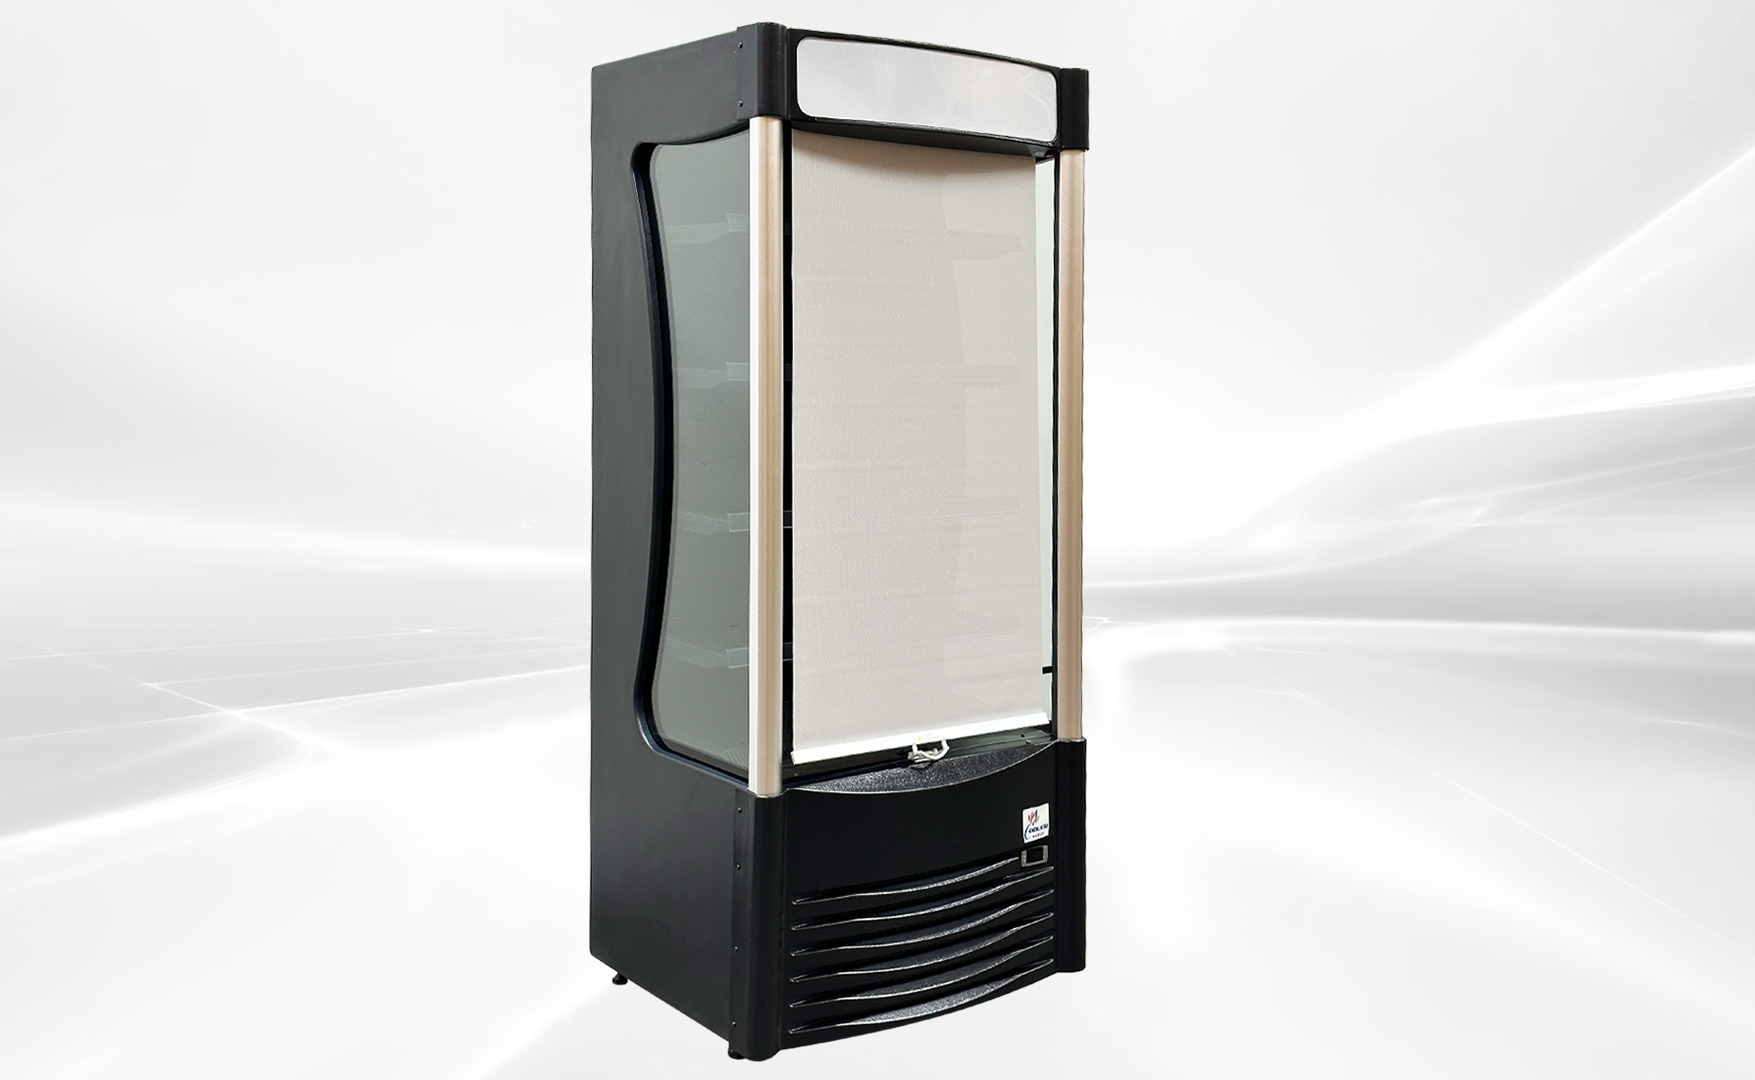 36 in Vertical Open Air Cooler Display Merchandiser NSF BLF926